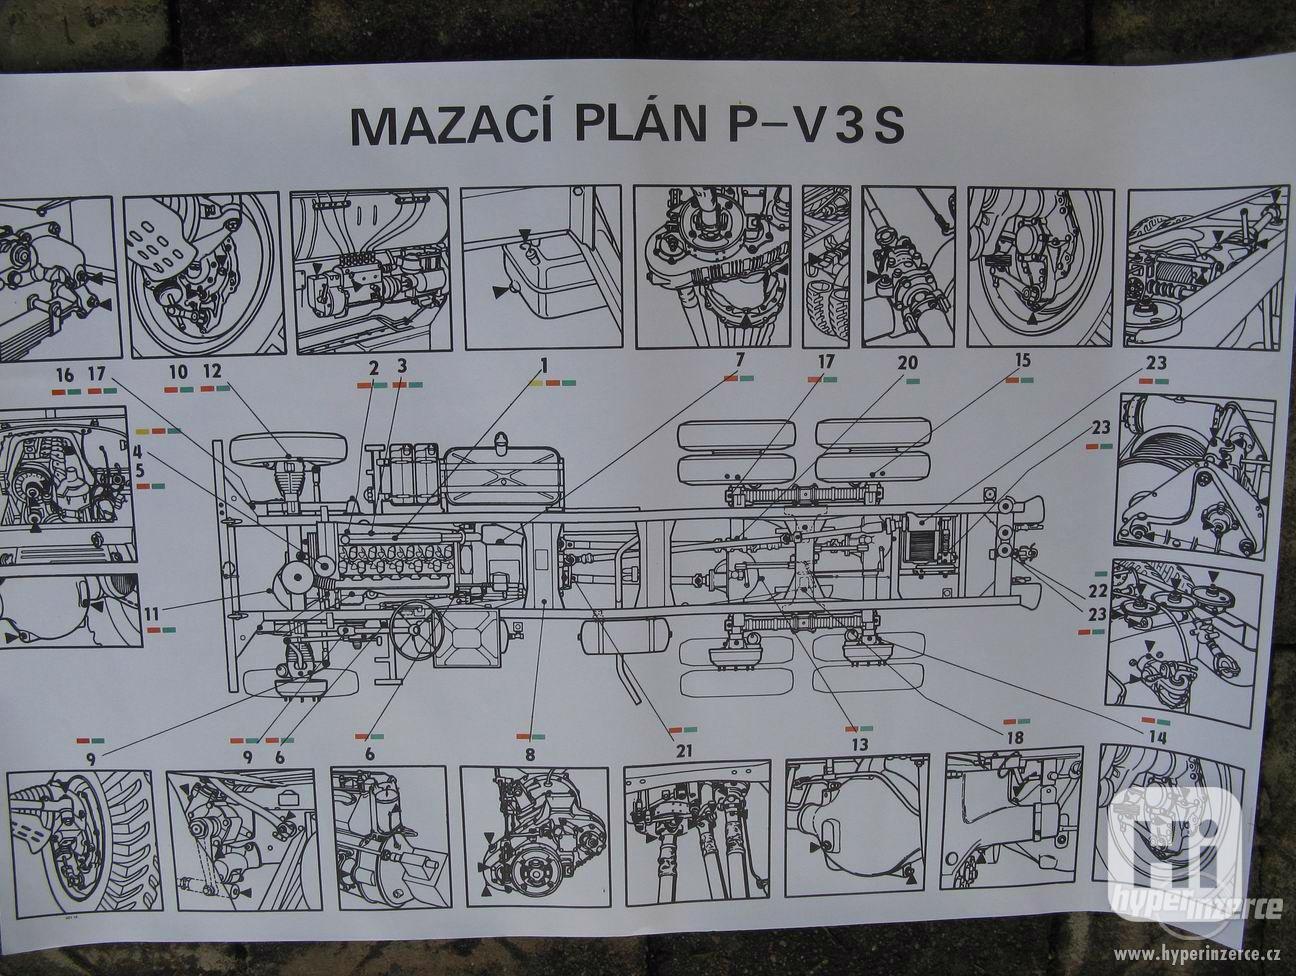  Škoda 105 - 120 , Mazací plán  Praga V3S a další knihy .  - foto 1